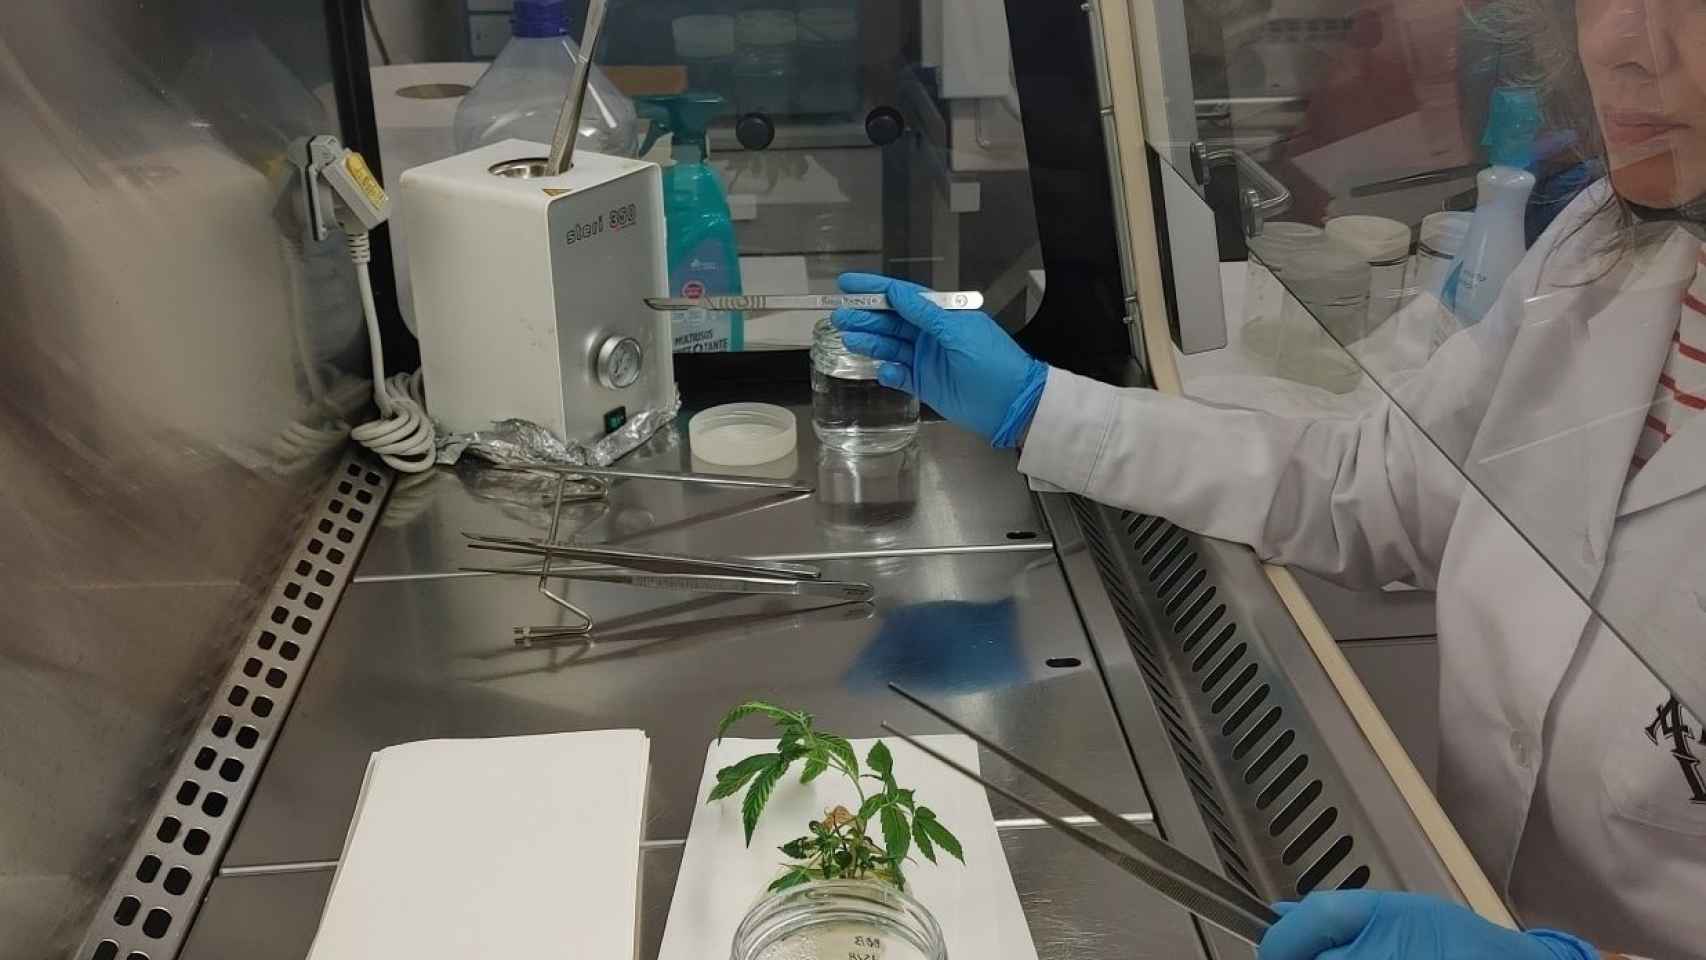 Aleovitro podrá cultivar in vitro plantas de cannabis que tengan unos principios químicos de alta calidad.